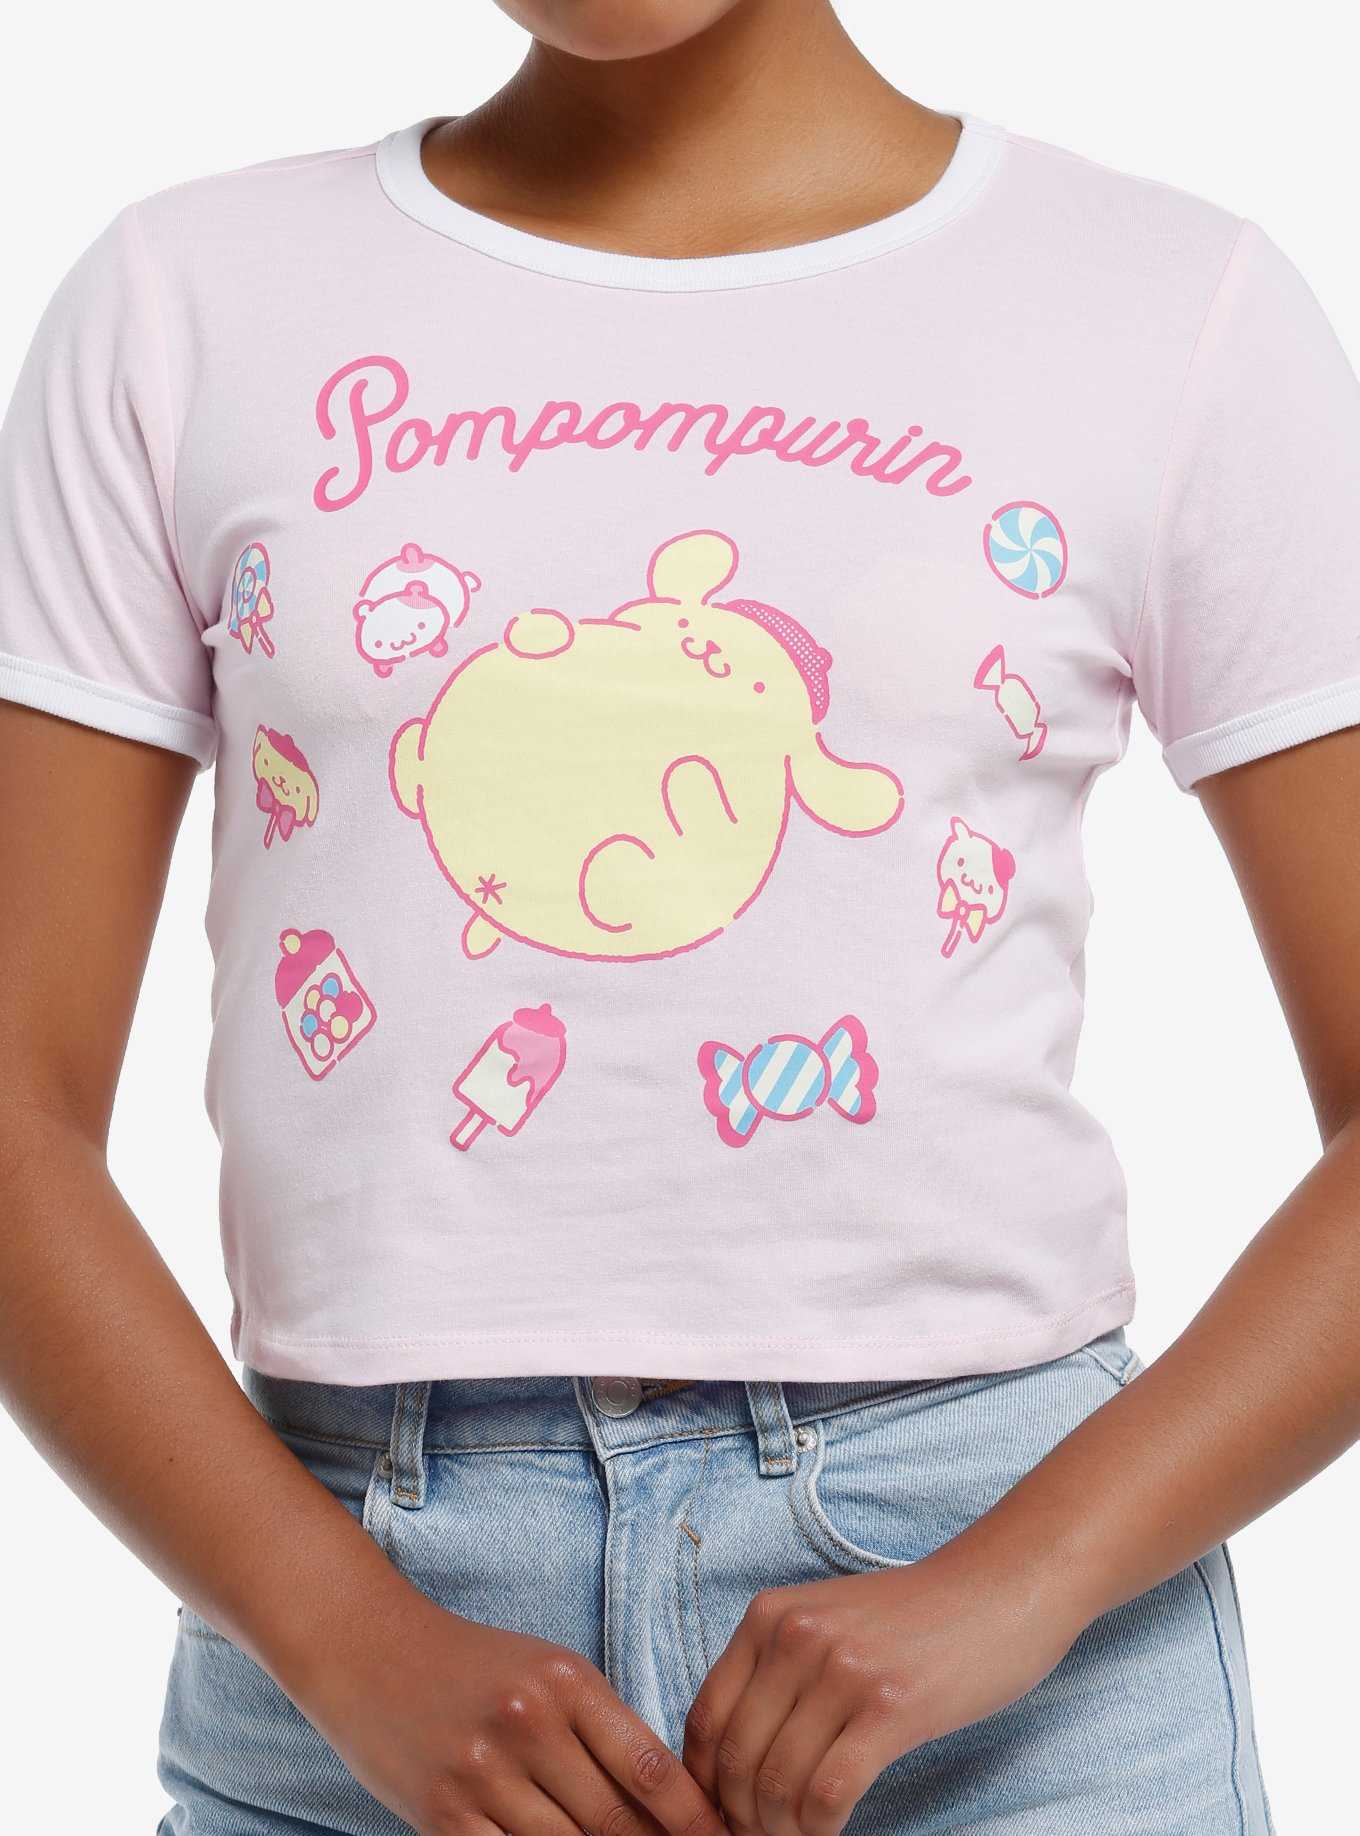 Pompompurin Sweets Girls Ringer T-Shirt, , hi-res